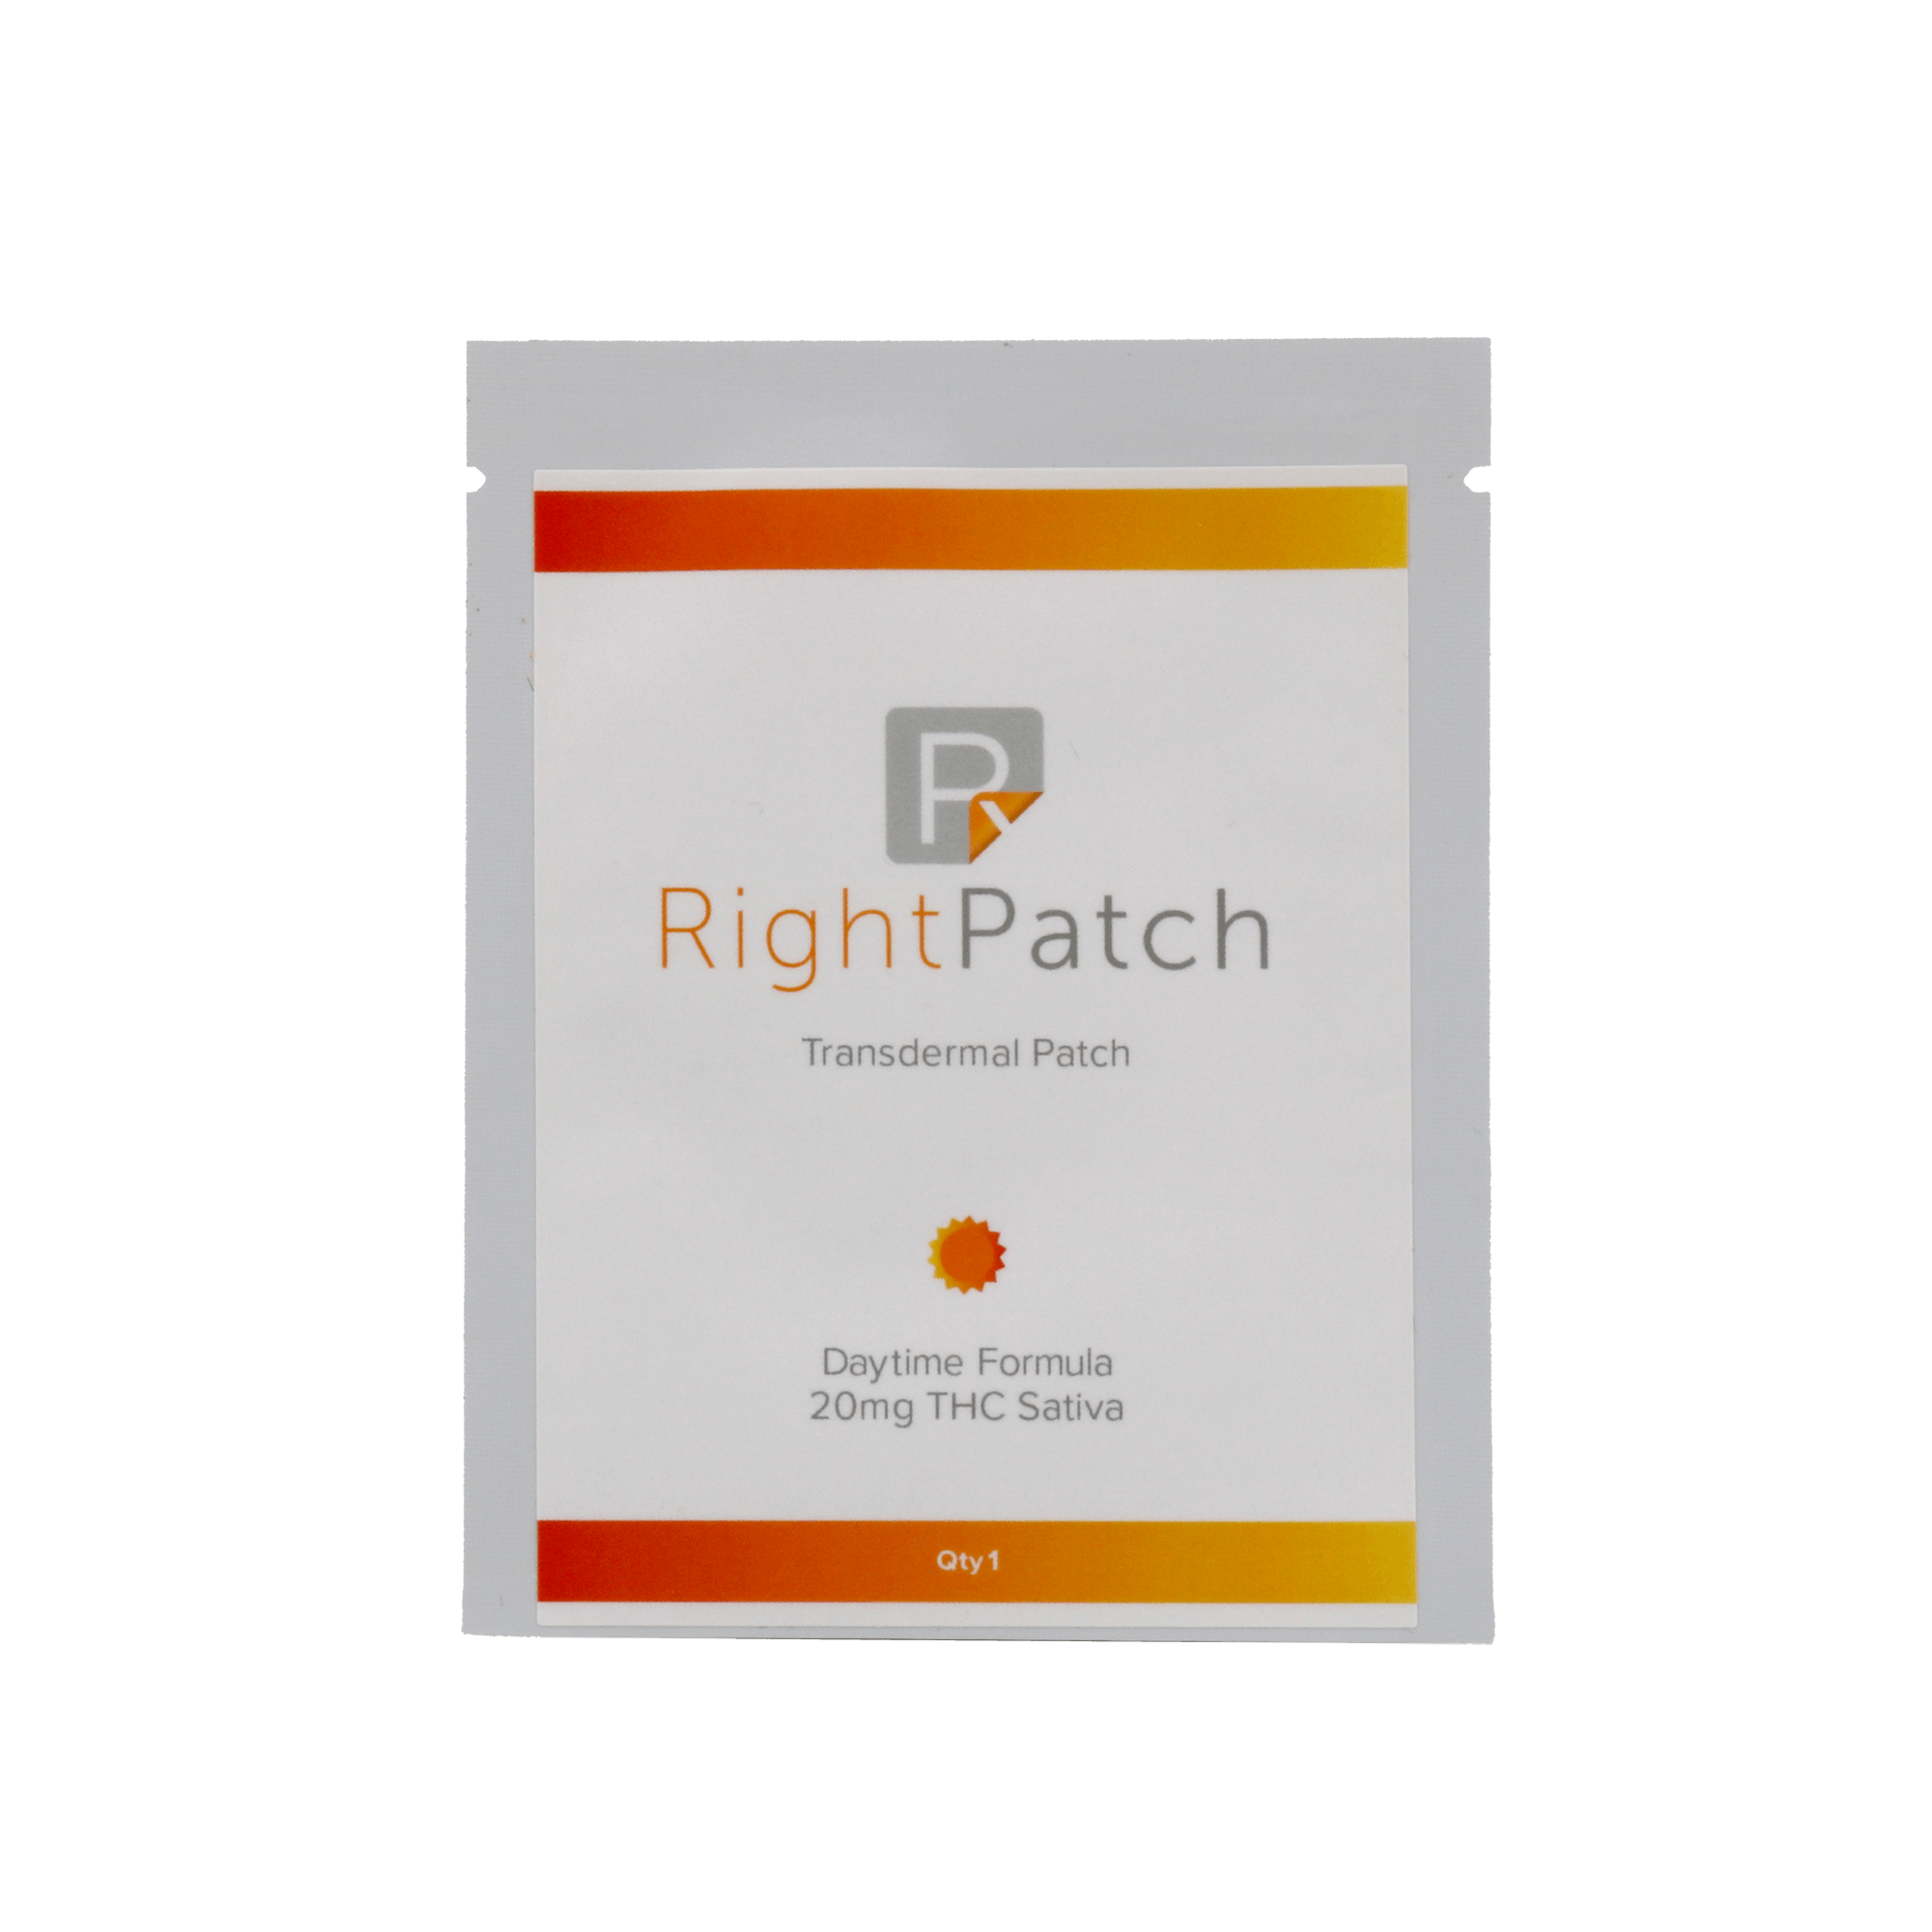 Right Patch-(Daytime Formula) Transdermal Patch- Sativa 20mg